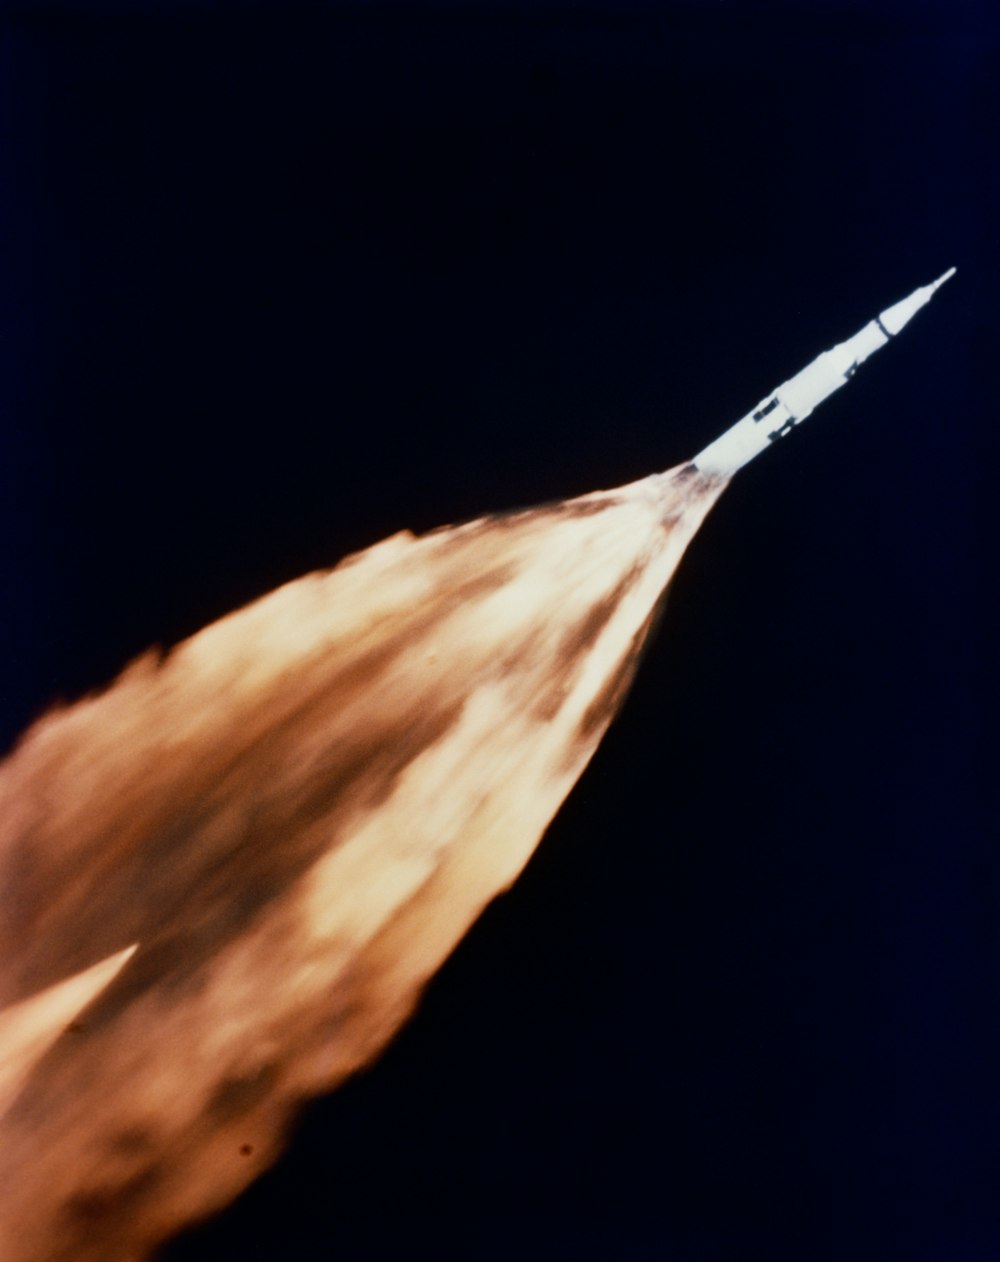 Cohete Saturno con un rastro de llamas durante el lanzamiento